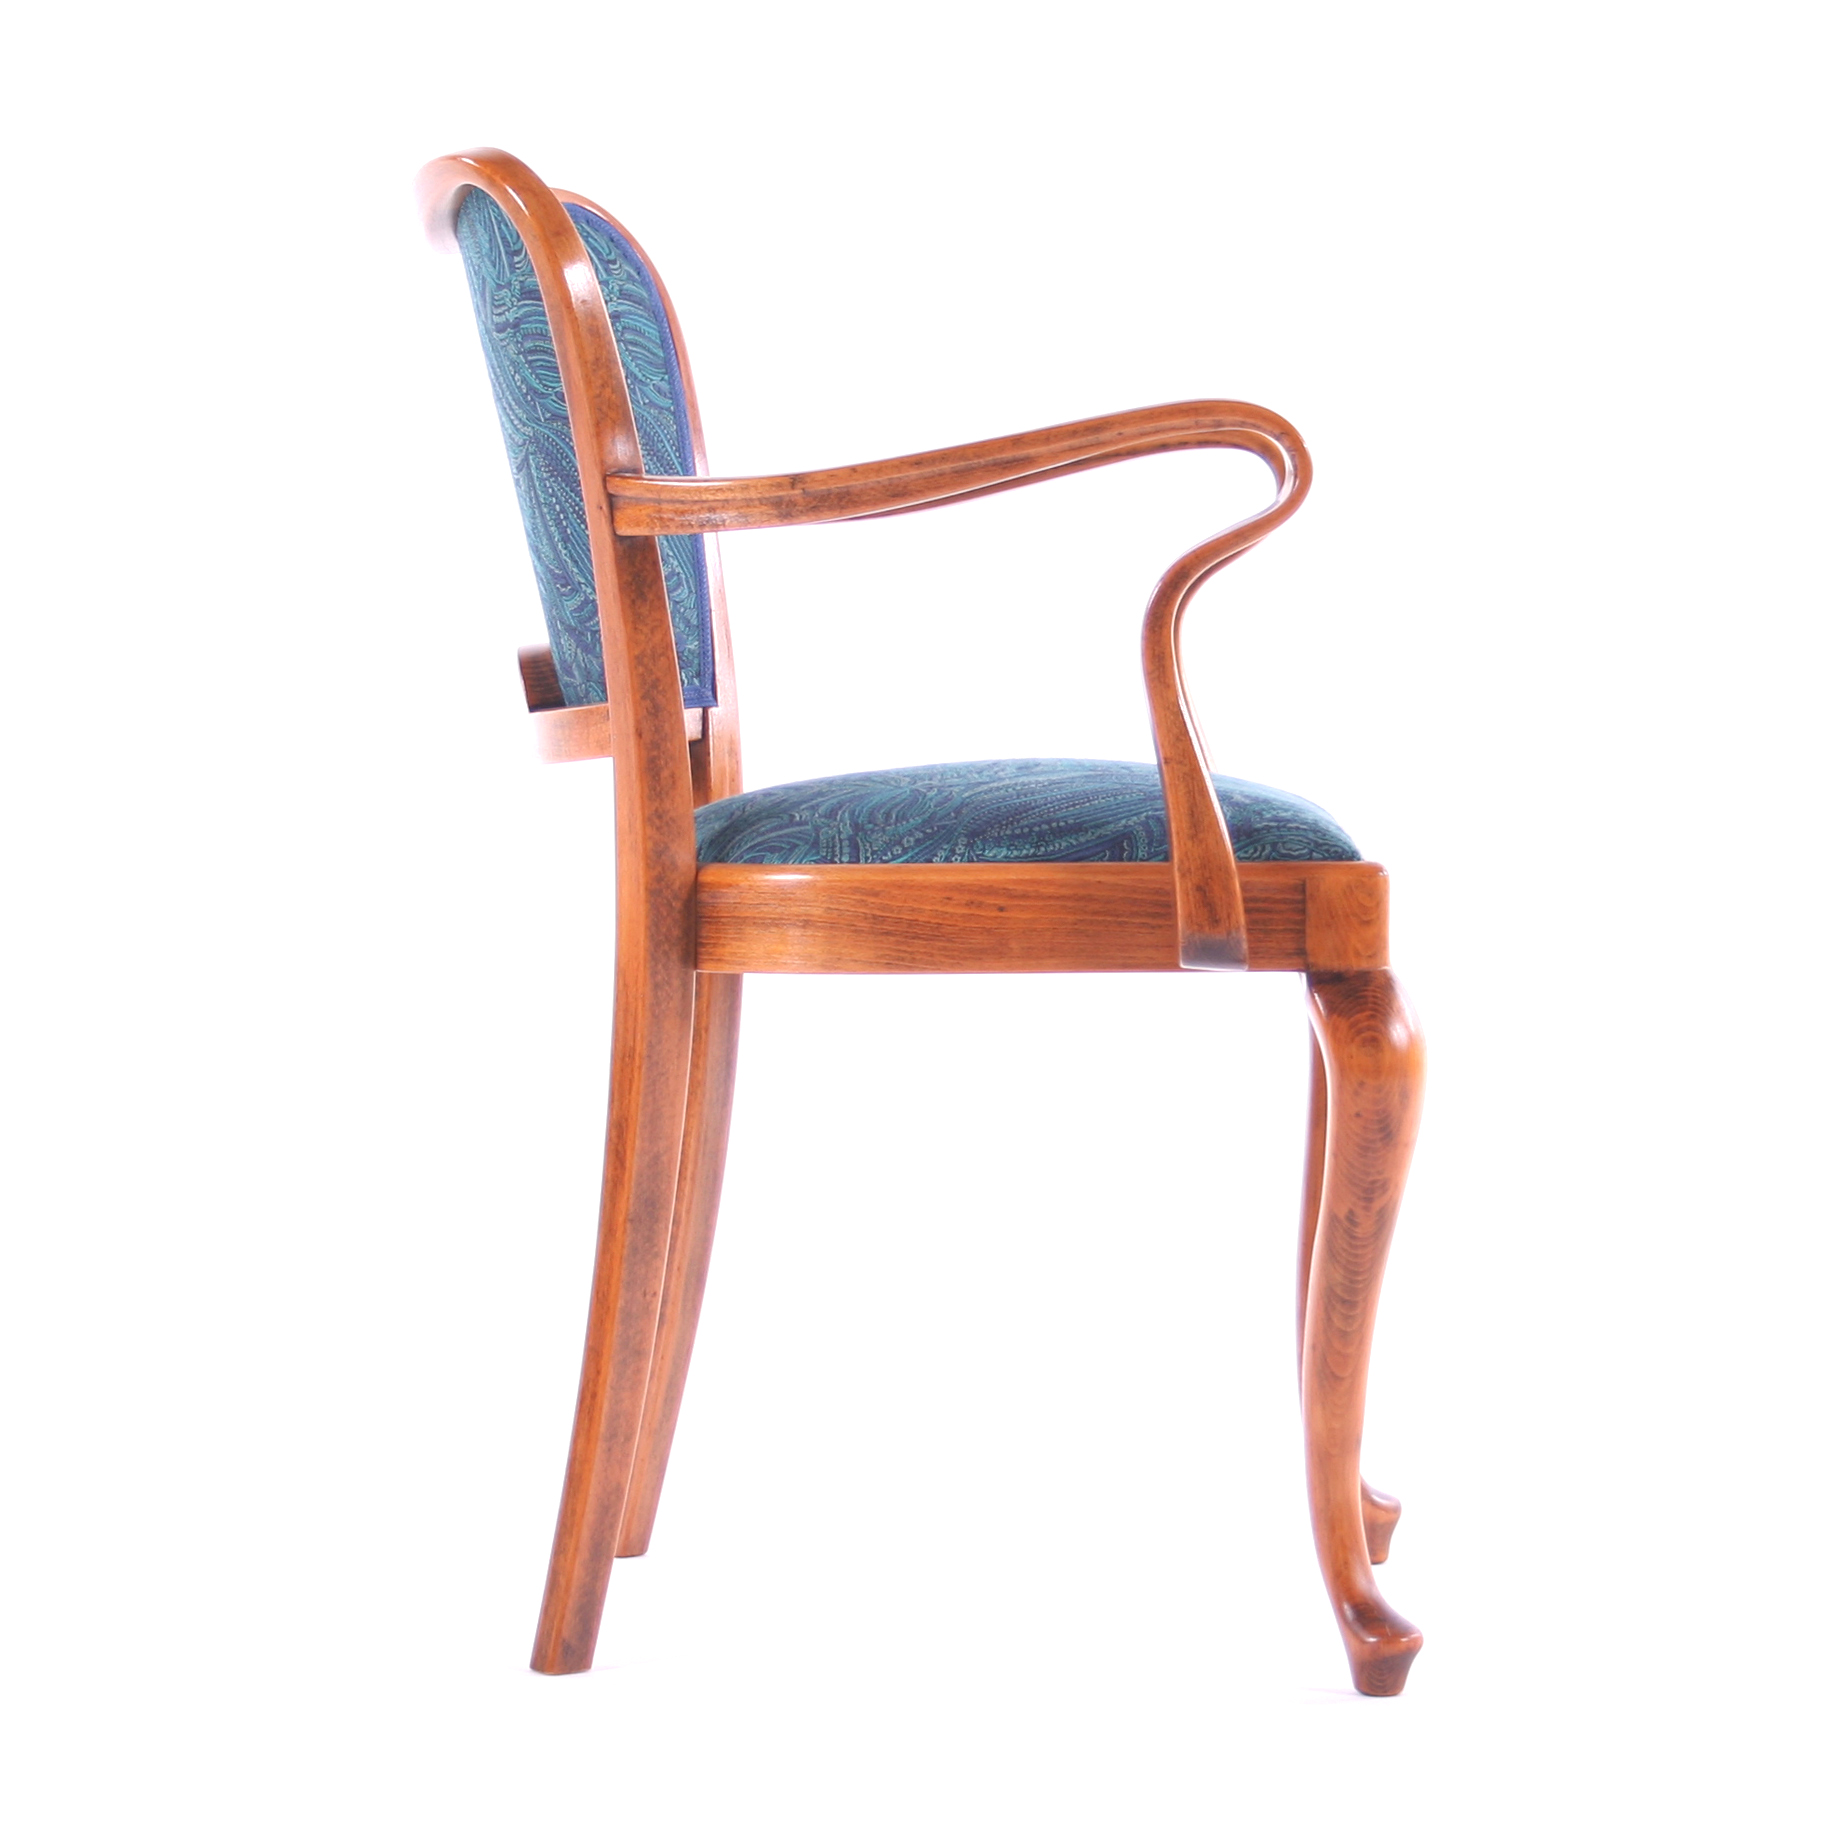  Chair THONET